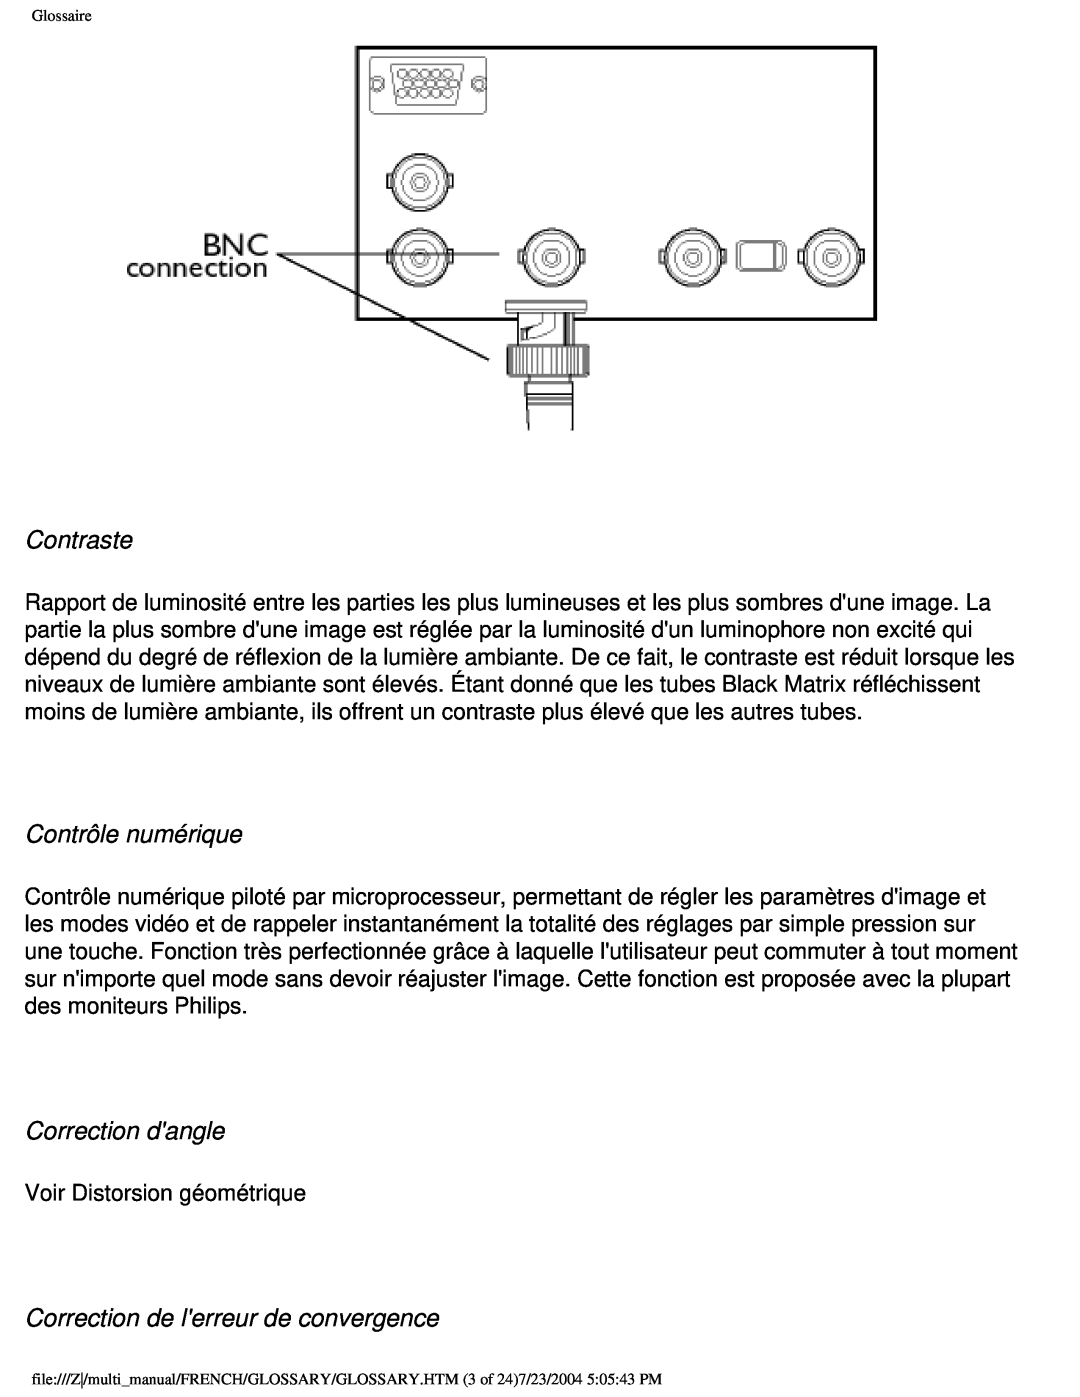 Philips 107B3 user manual Contraste, Contrôle numérique, Correction dangle, Correction de lerreur de convergence 